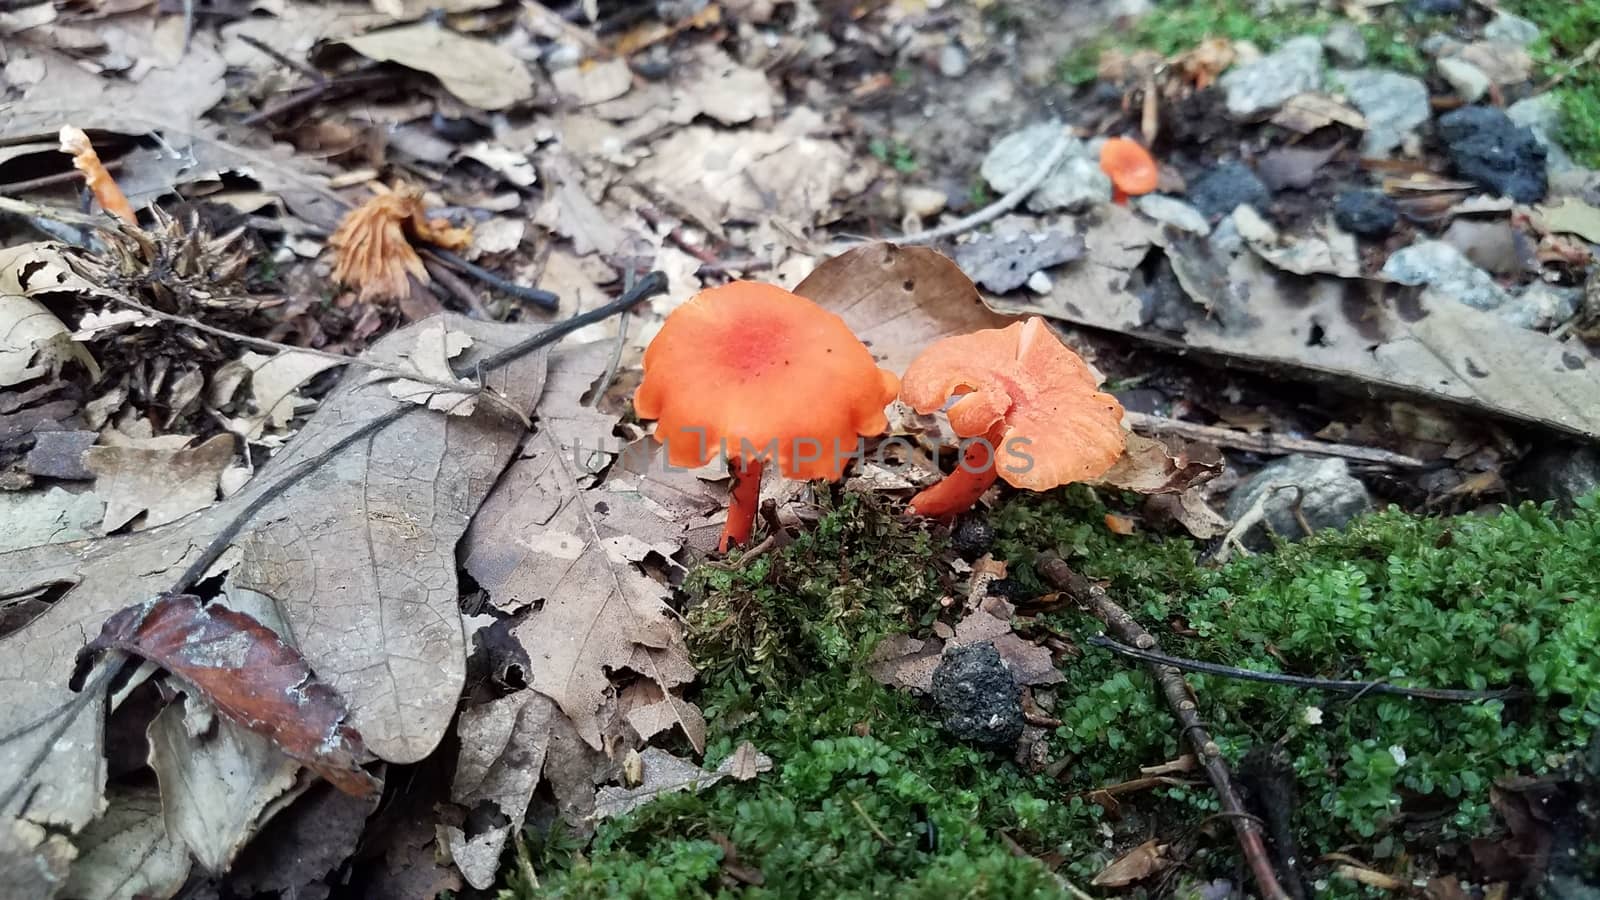 orange mushroom growing in brown leaves in forest by stockphotofan1